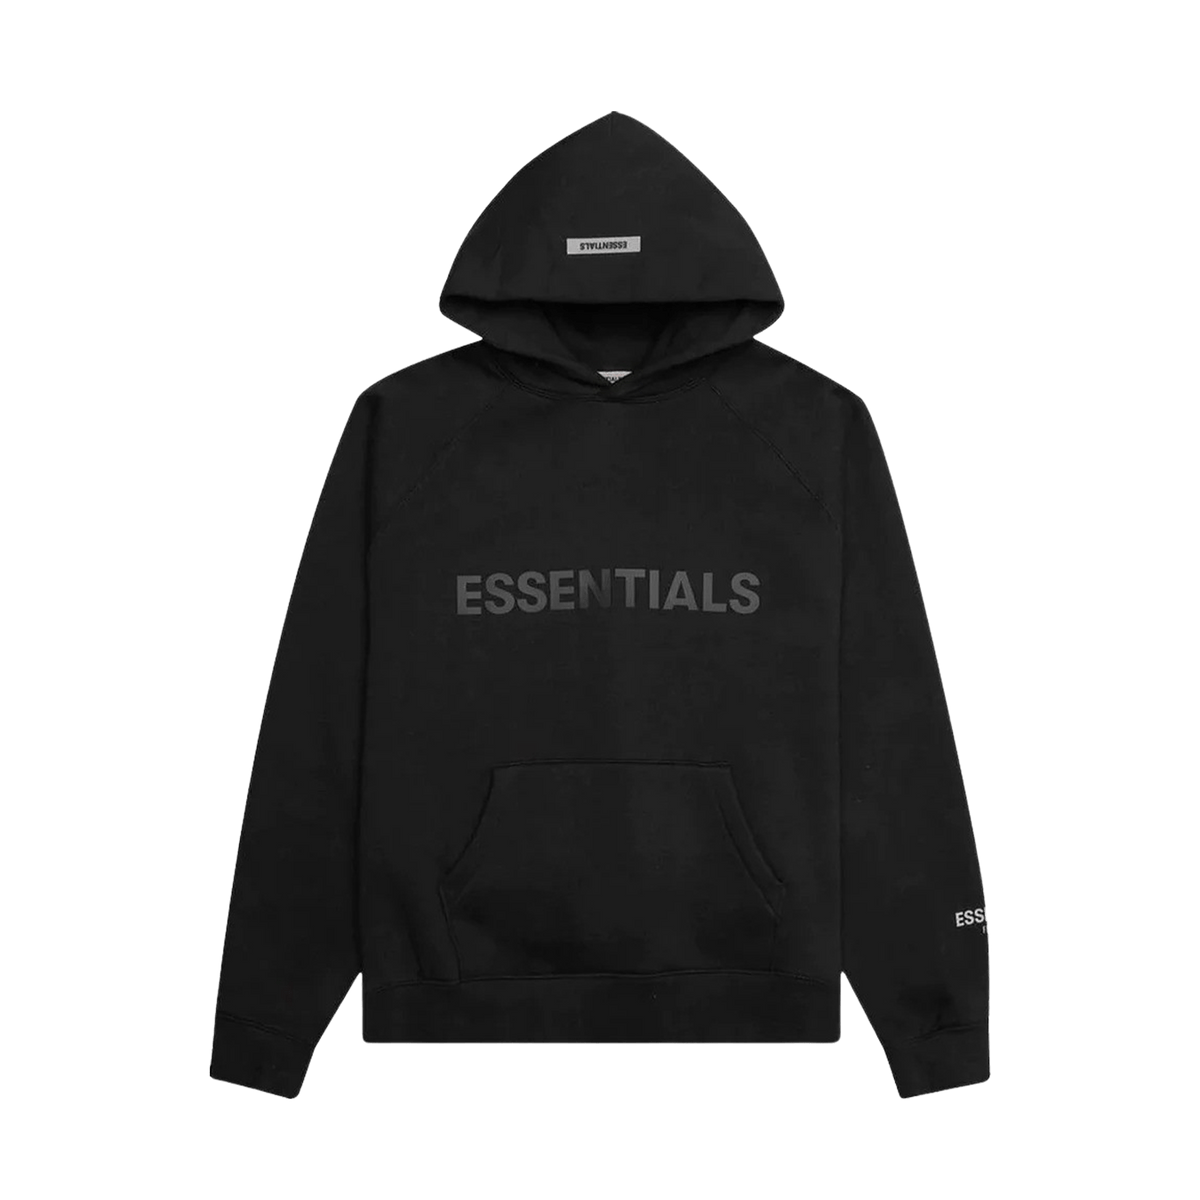 Dsquared2 slogan print sweatshirt Essentials Pullover Hoodie Applique Logo 'Dark Slate/Stretch Limo/Black' - JuzsportsShops